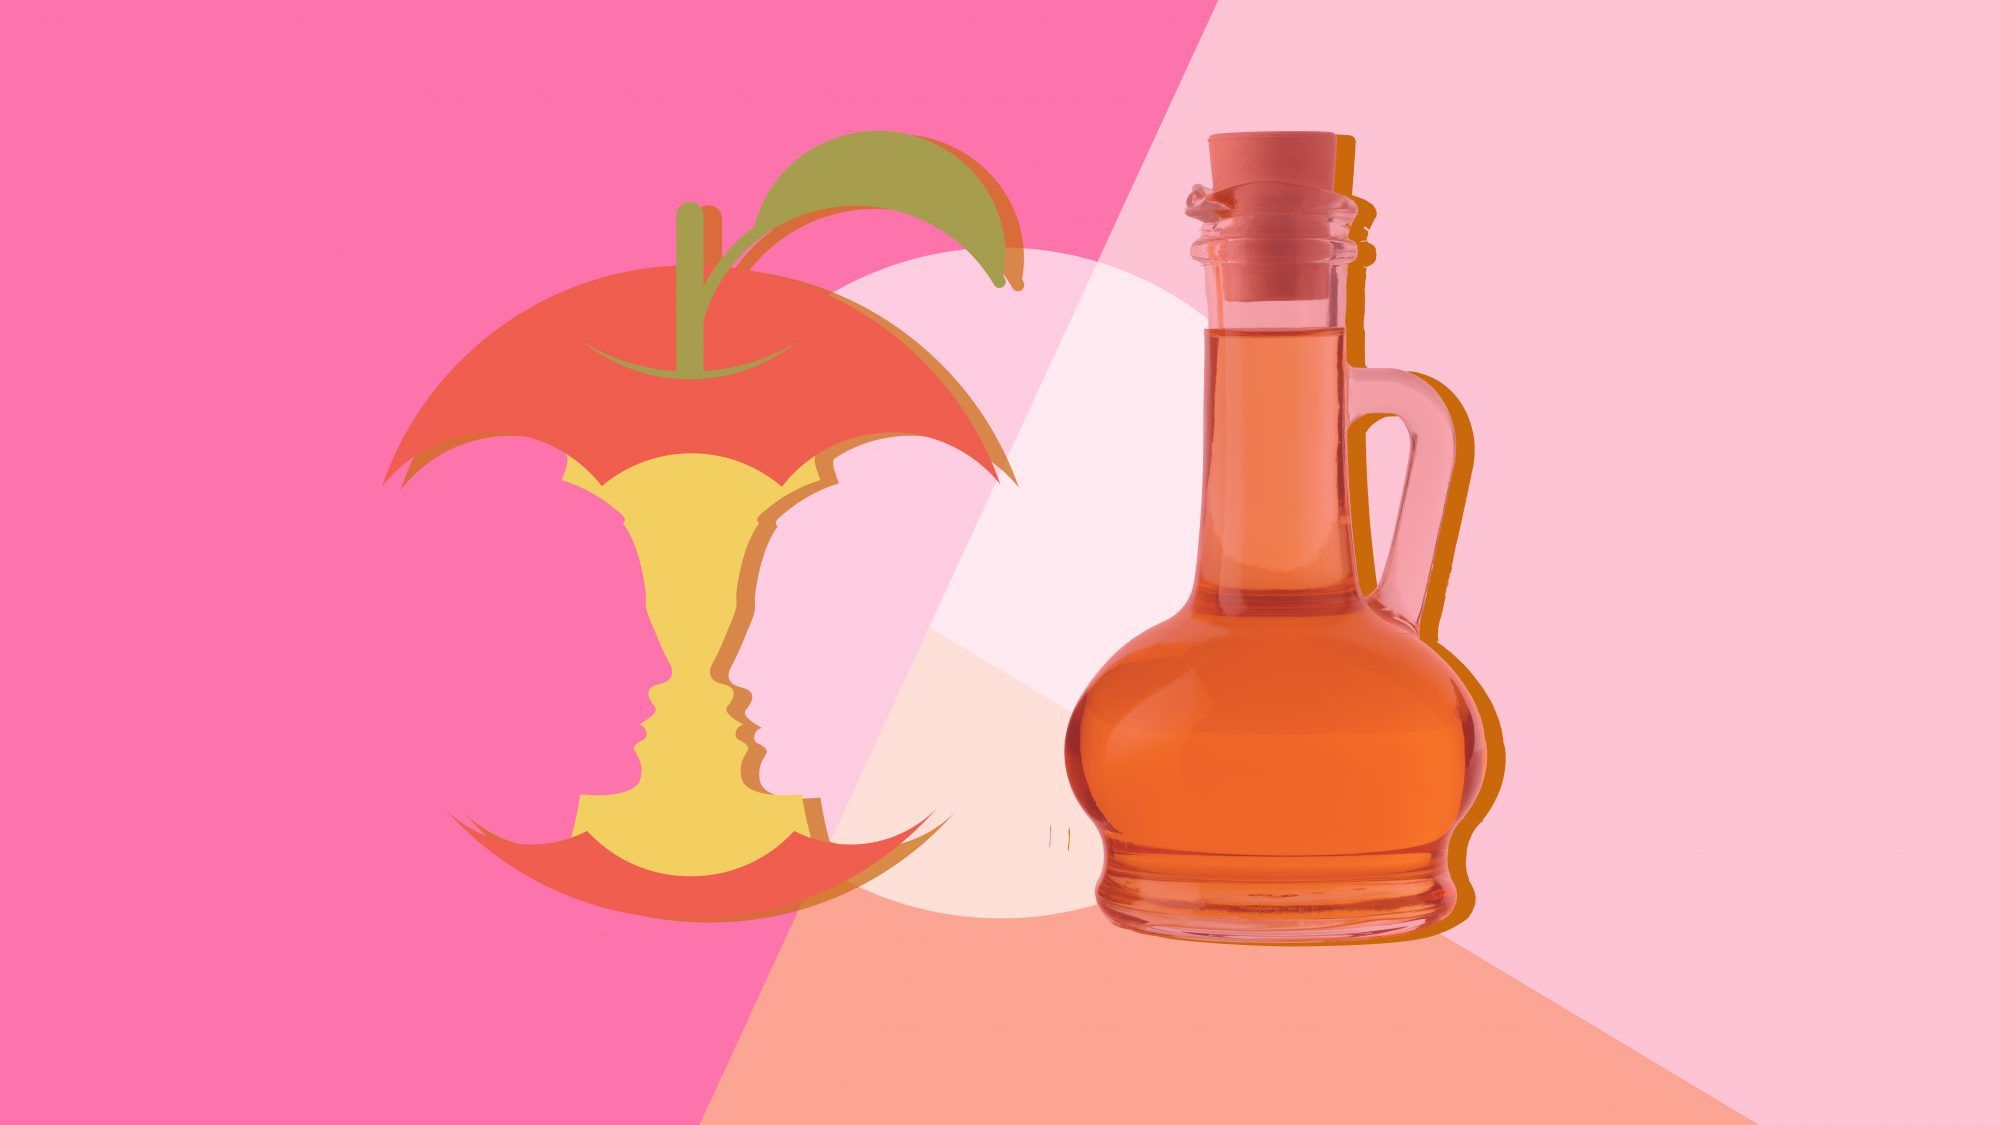 Apple Cider Vinegar는 많은 용도로 사용되지만 피부에 안전합니까?